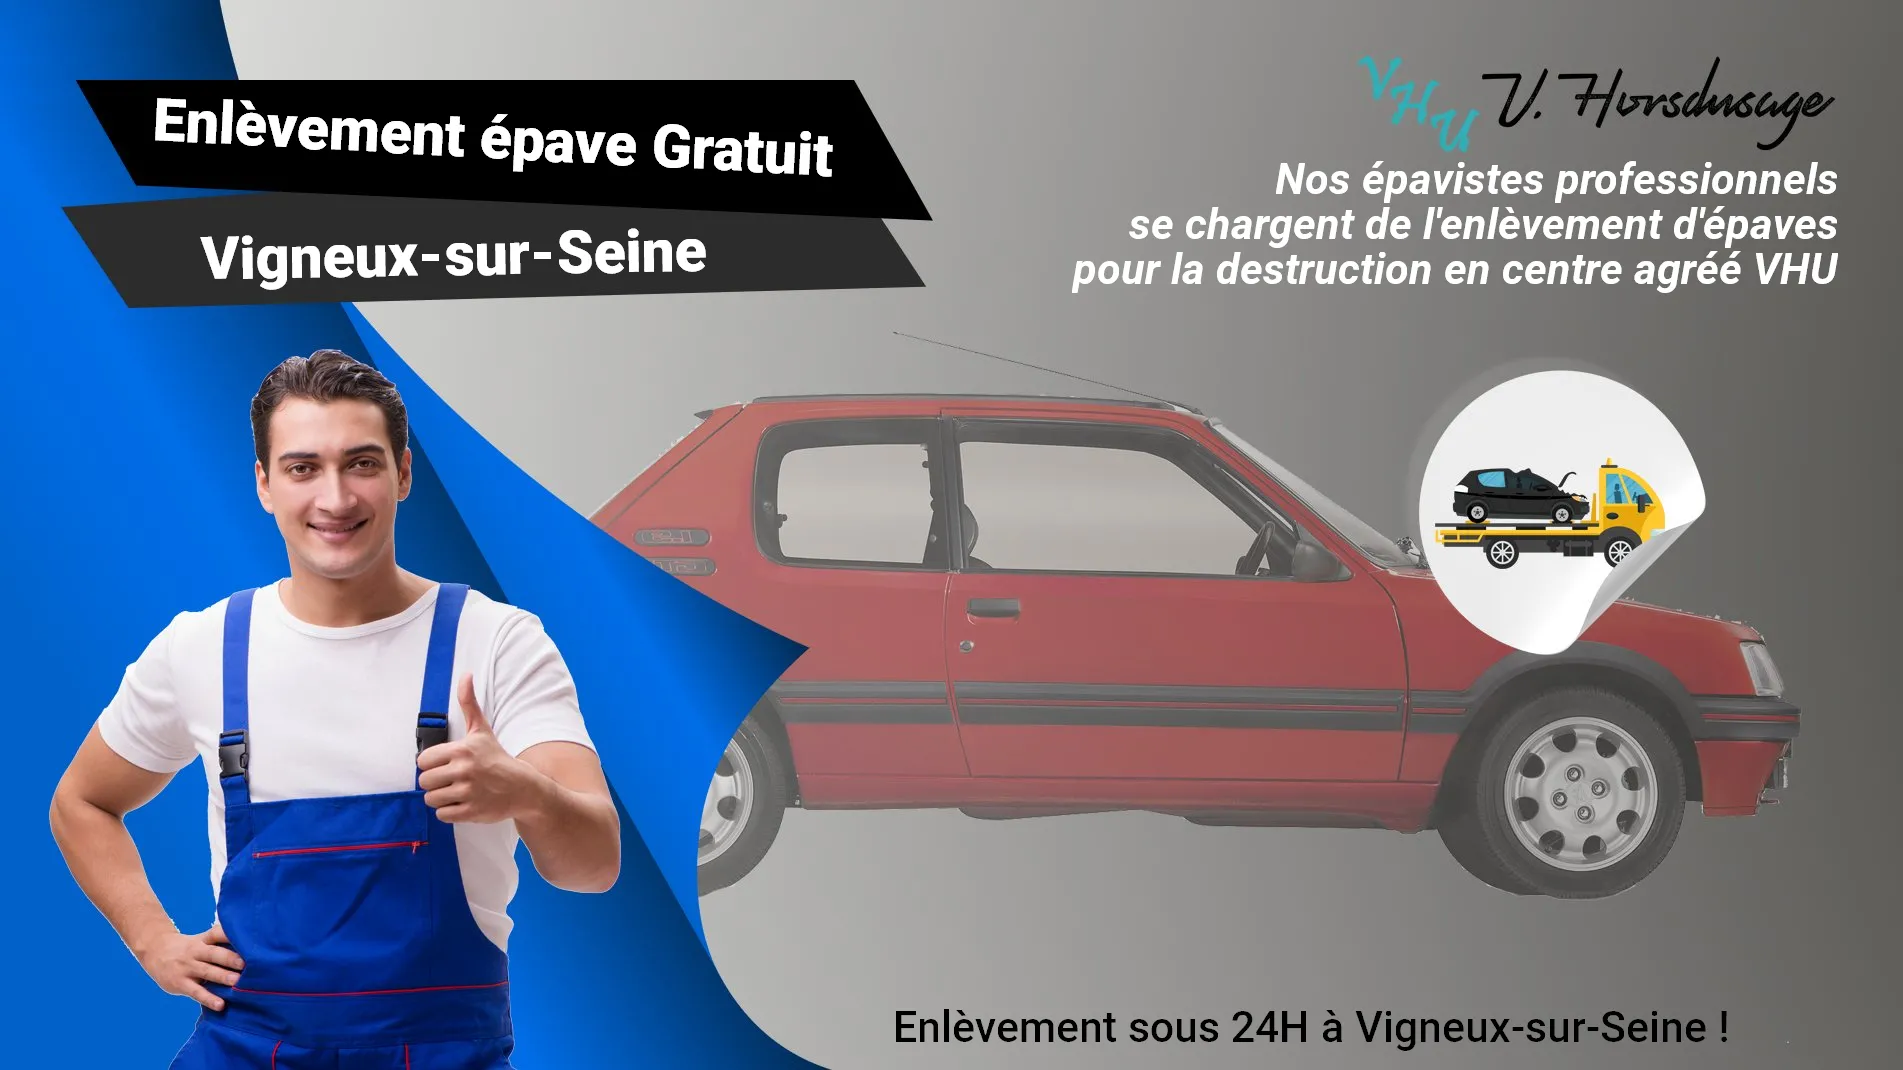 Pour un enlèvement gratuit à Vigneux-sur-Seine, contactez nos épavistes agréé VHU